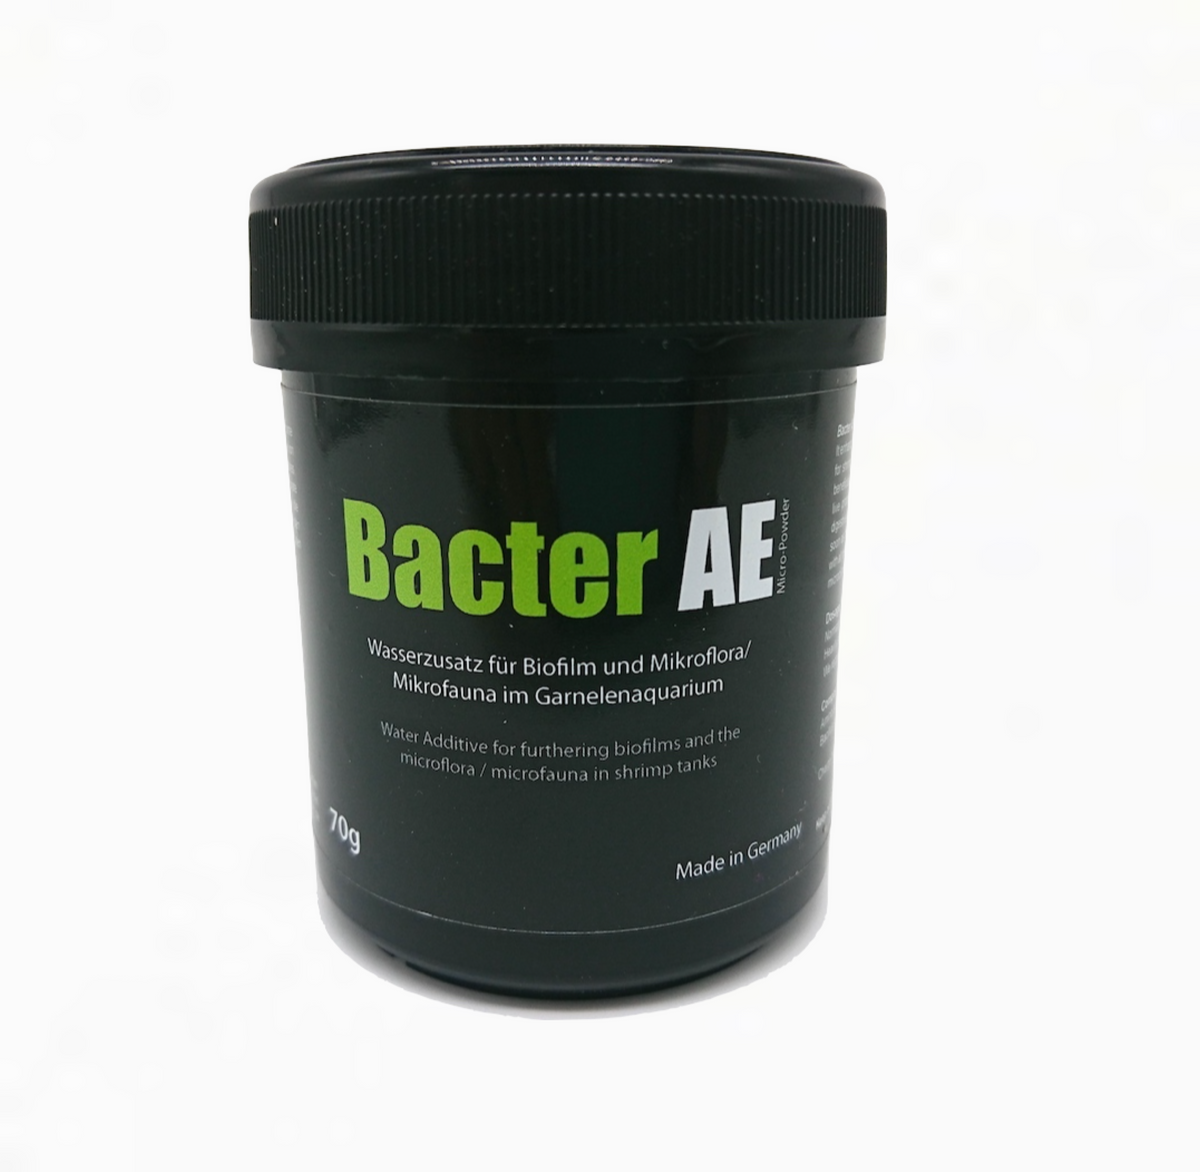 http://shrimperyandaquatics.com/cdn/shop/products/Bacter_AE_Glasgarten_70g_1_1200x1200.png?v=1577302114